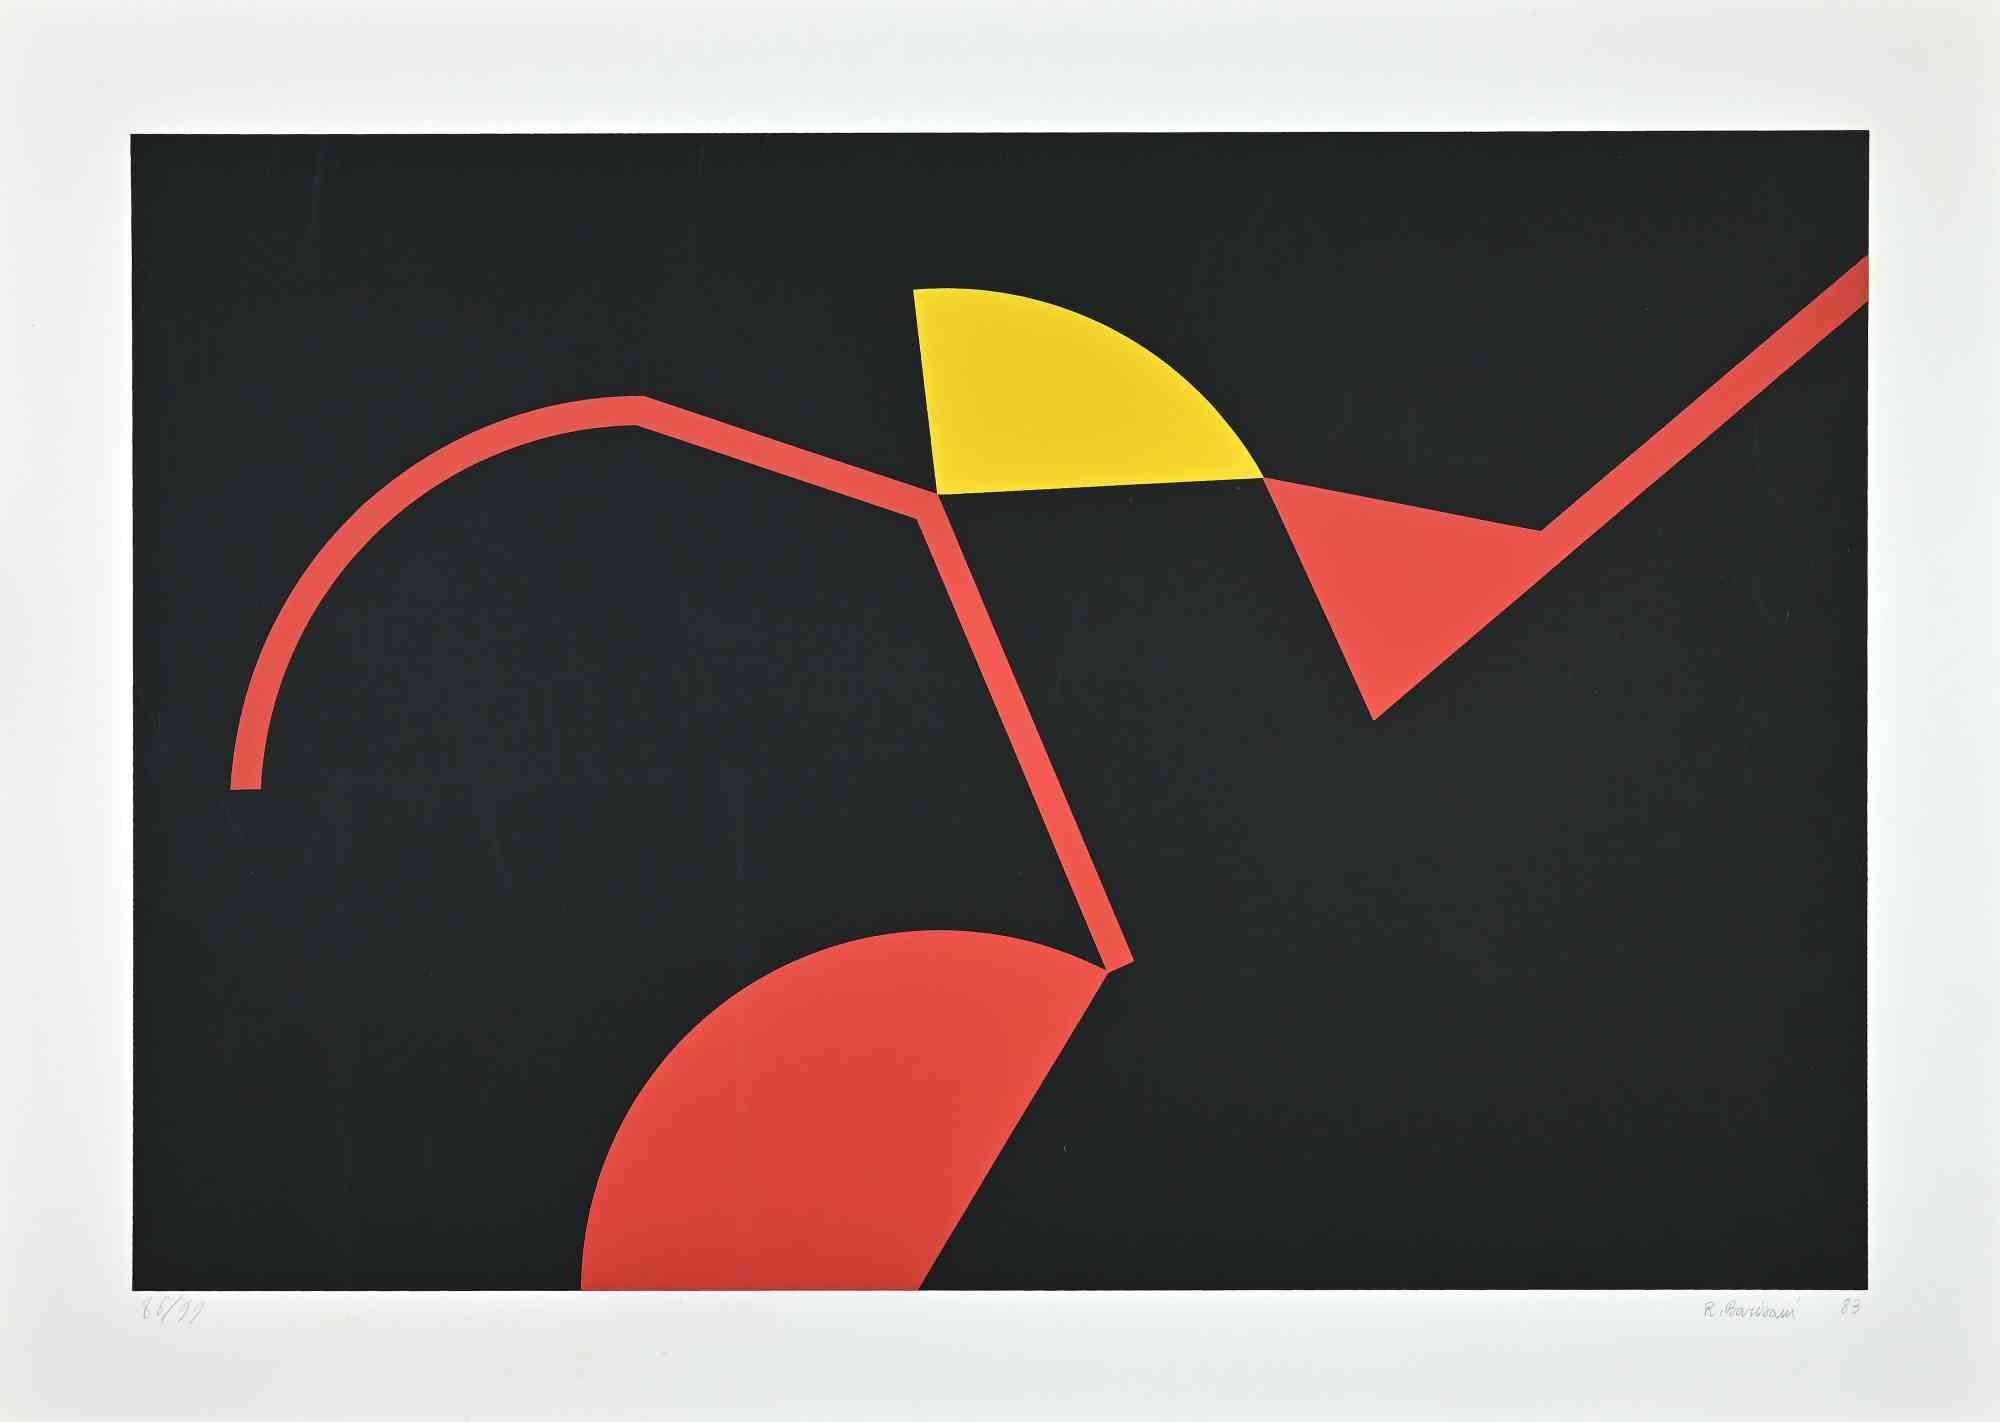 Les structures rouges et jaunes est une sérigraphie colorée originale réalisée par Renato Barisani en 1983.

Signé et daté au crayon en bas à droite. Numéroté au crayon en bas à gauche. Édition de 99 exemplaires

Bonnes conditions.

Cette